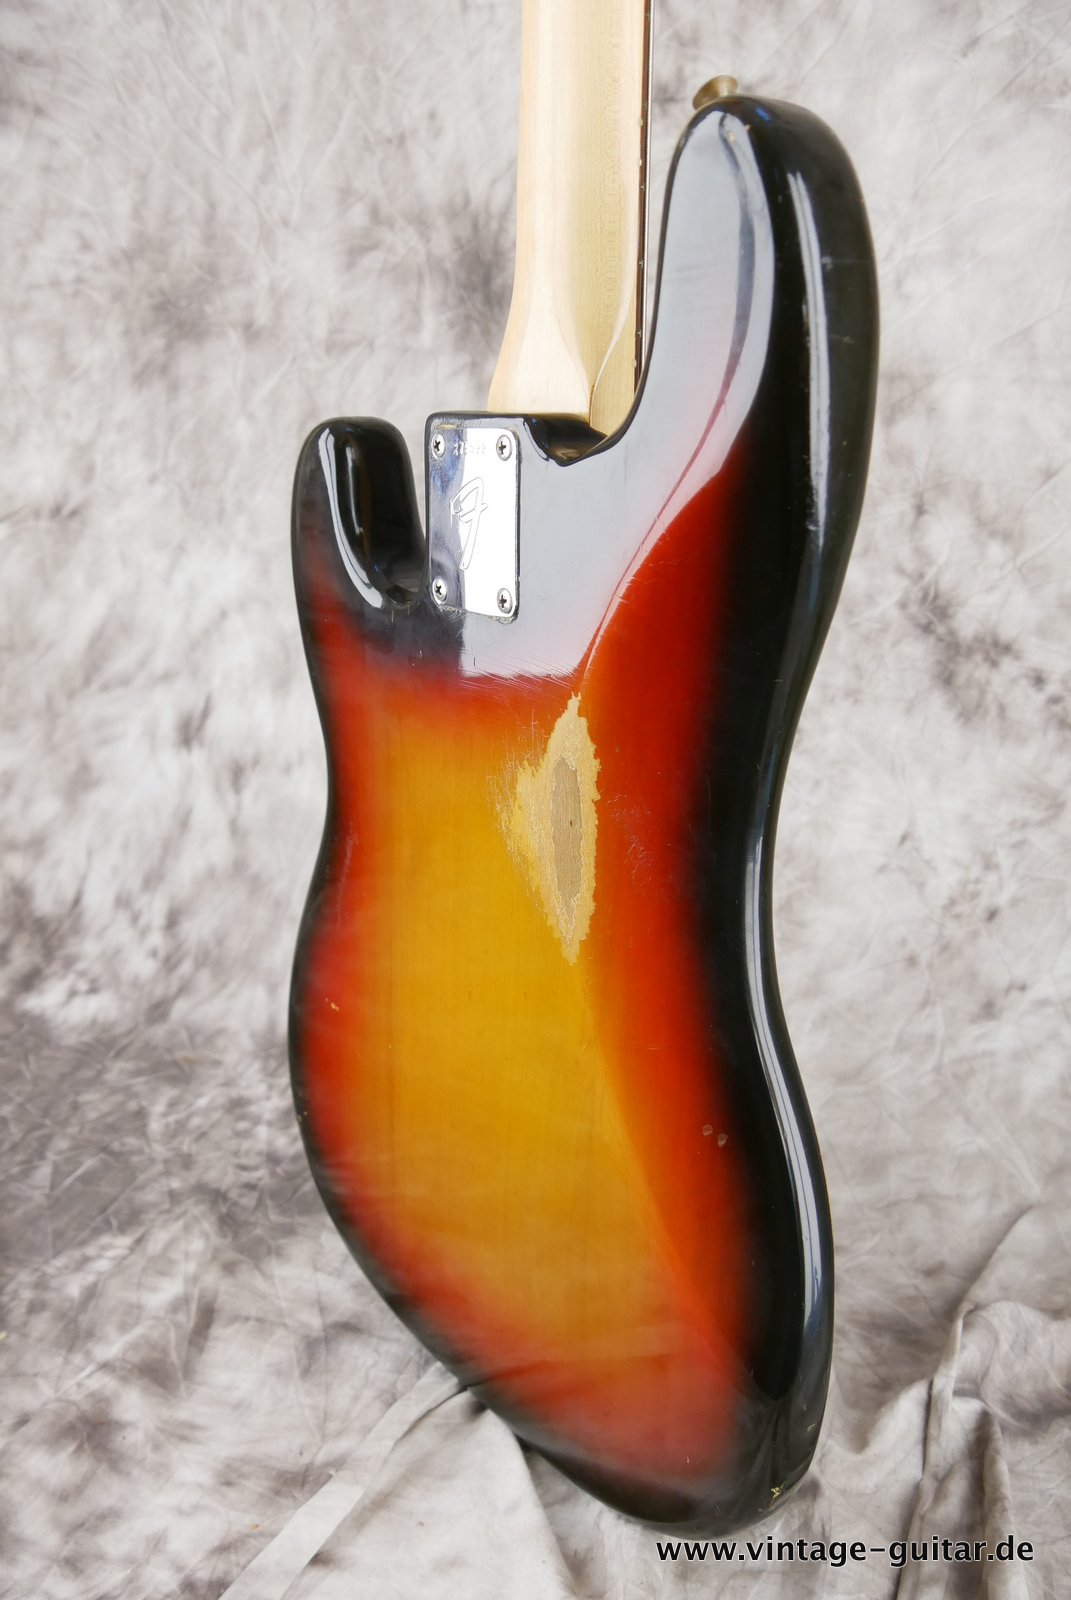 Fender-Precision-Bass-sunburst-1969-008.JPG